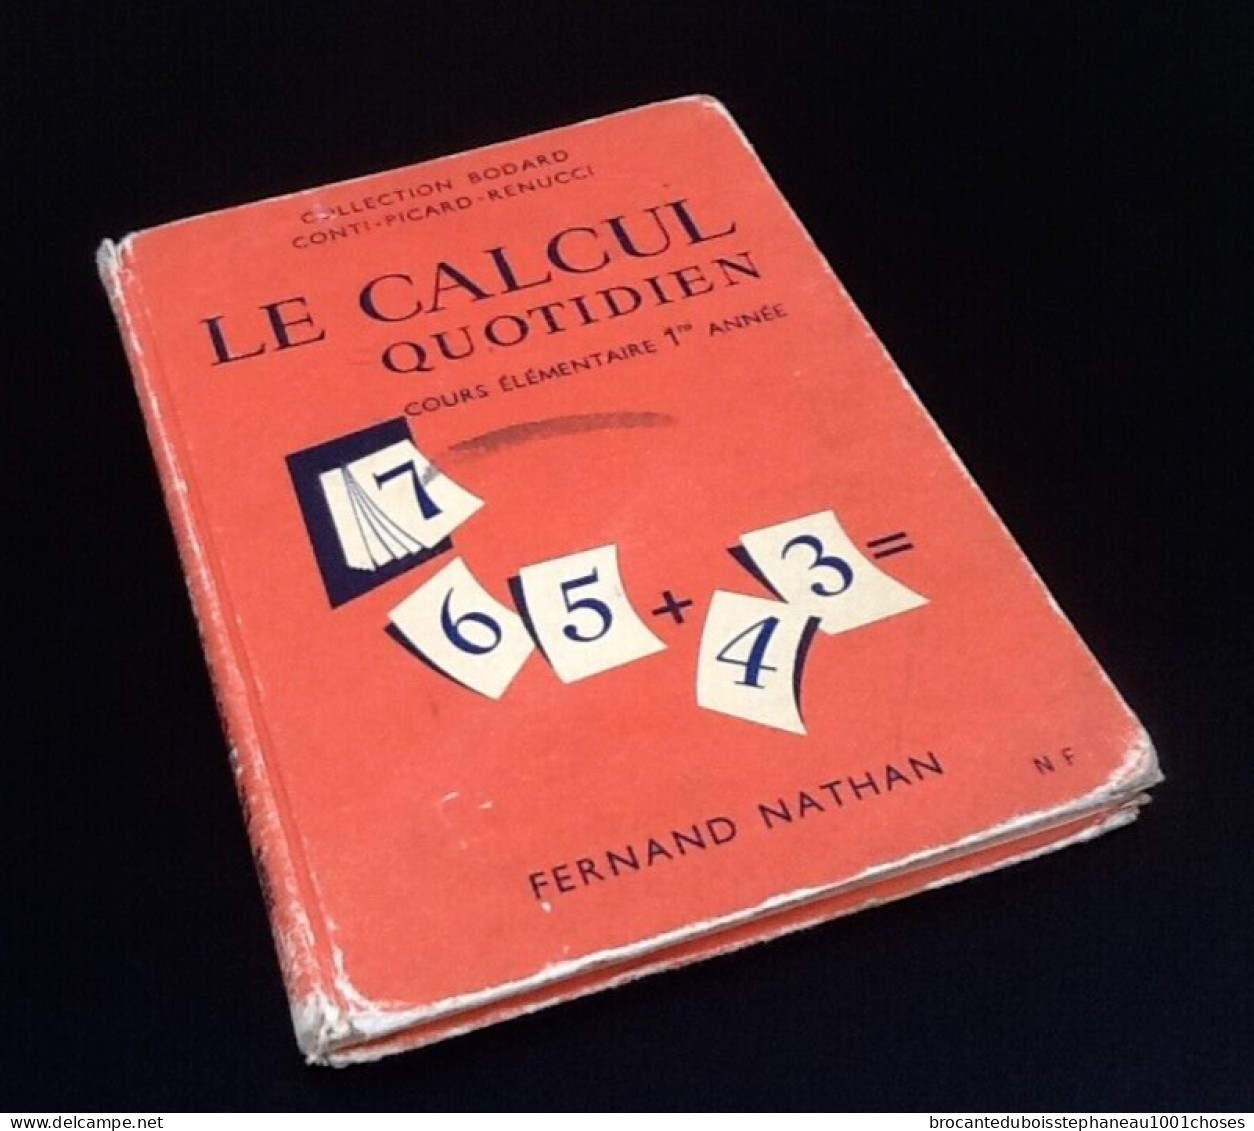 Collection Bodard / Conti  Le calcul quotidien   Cours Elémentaire 1ère Année  (1962)